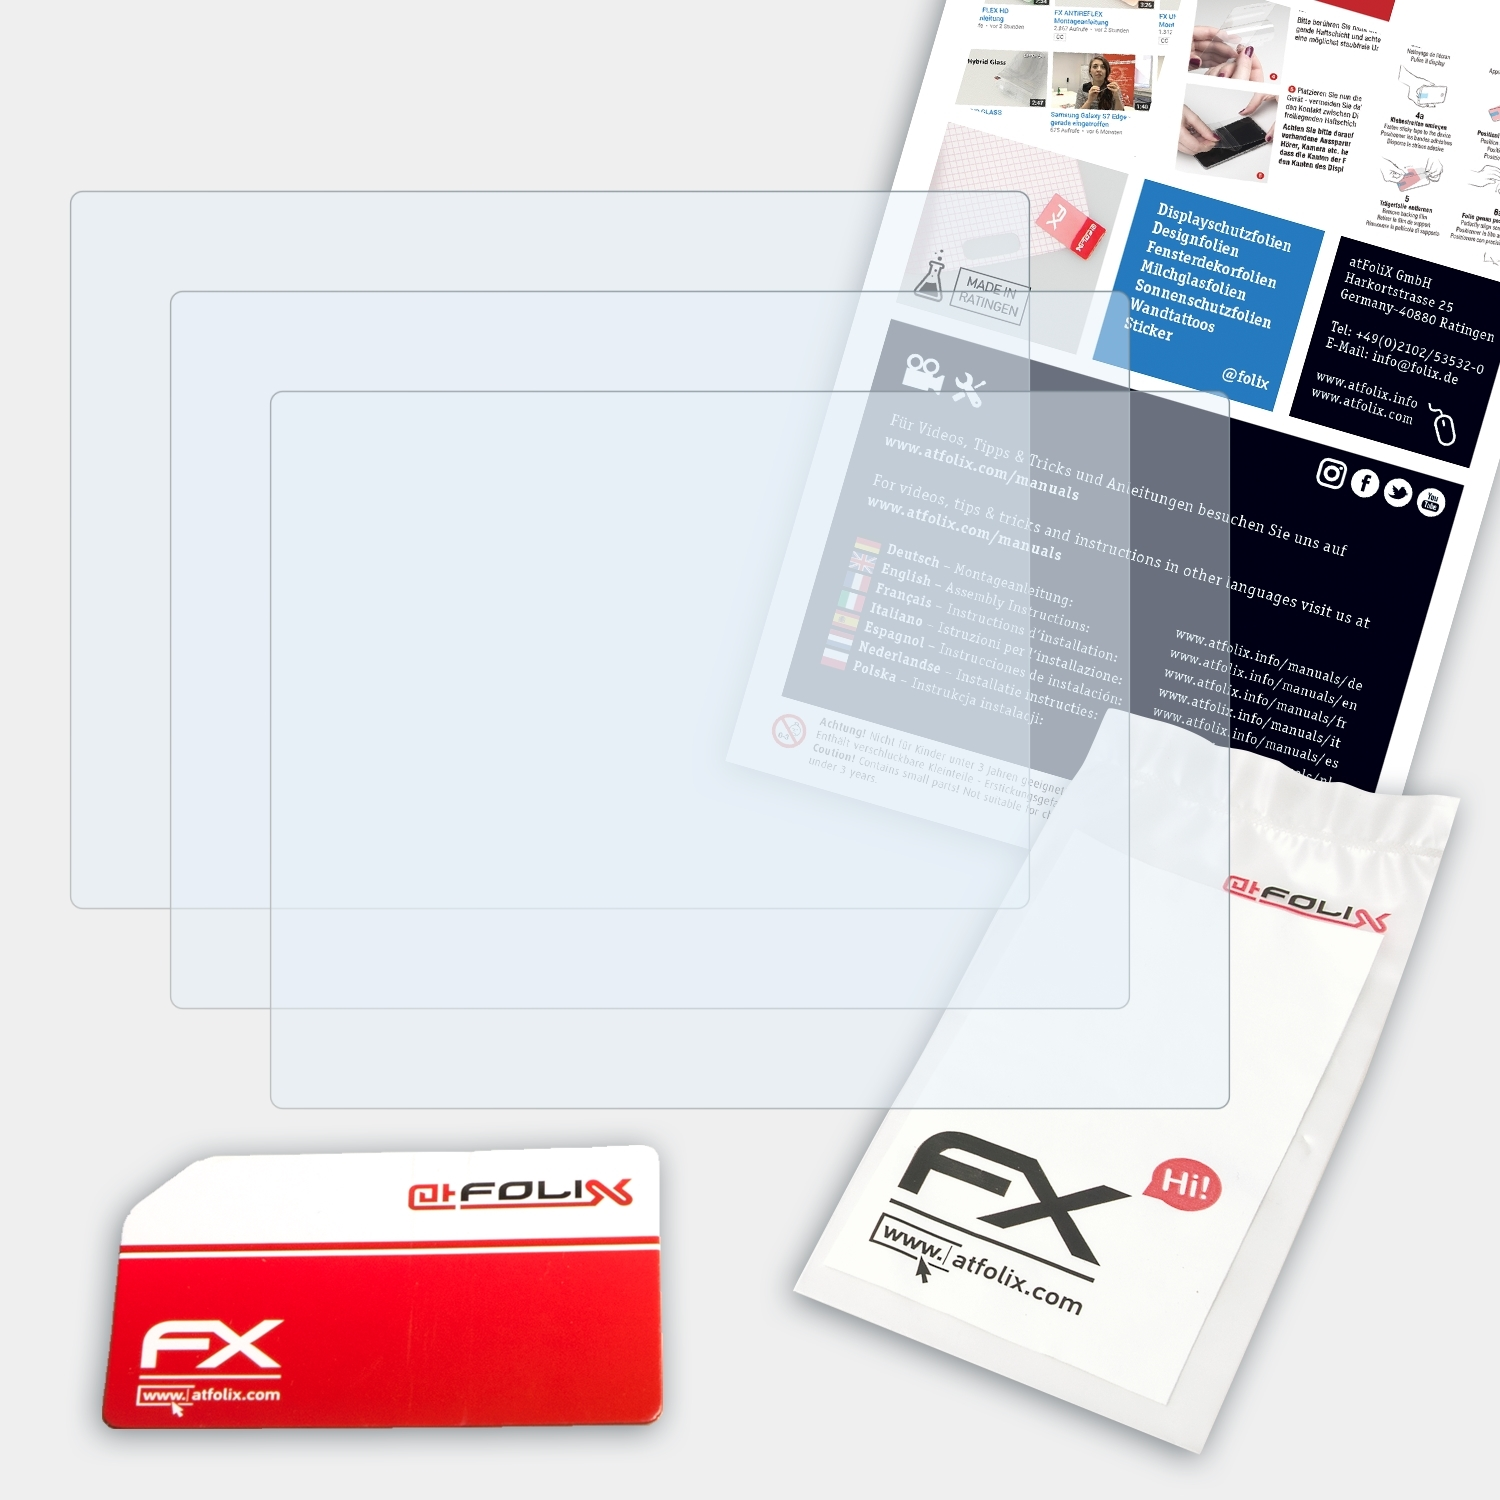 FX-Clear 3x Displayschutz(für Olympus ATFOLIX E-P1)